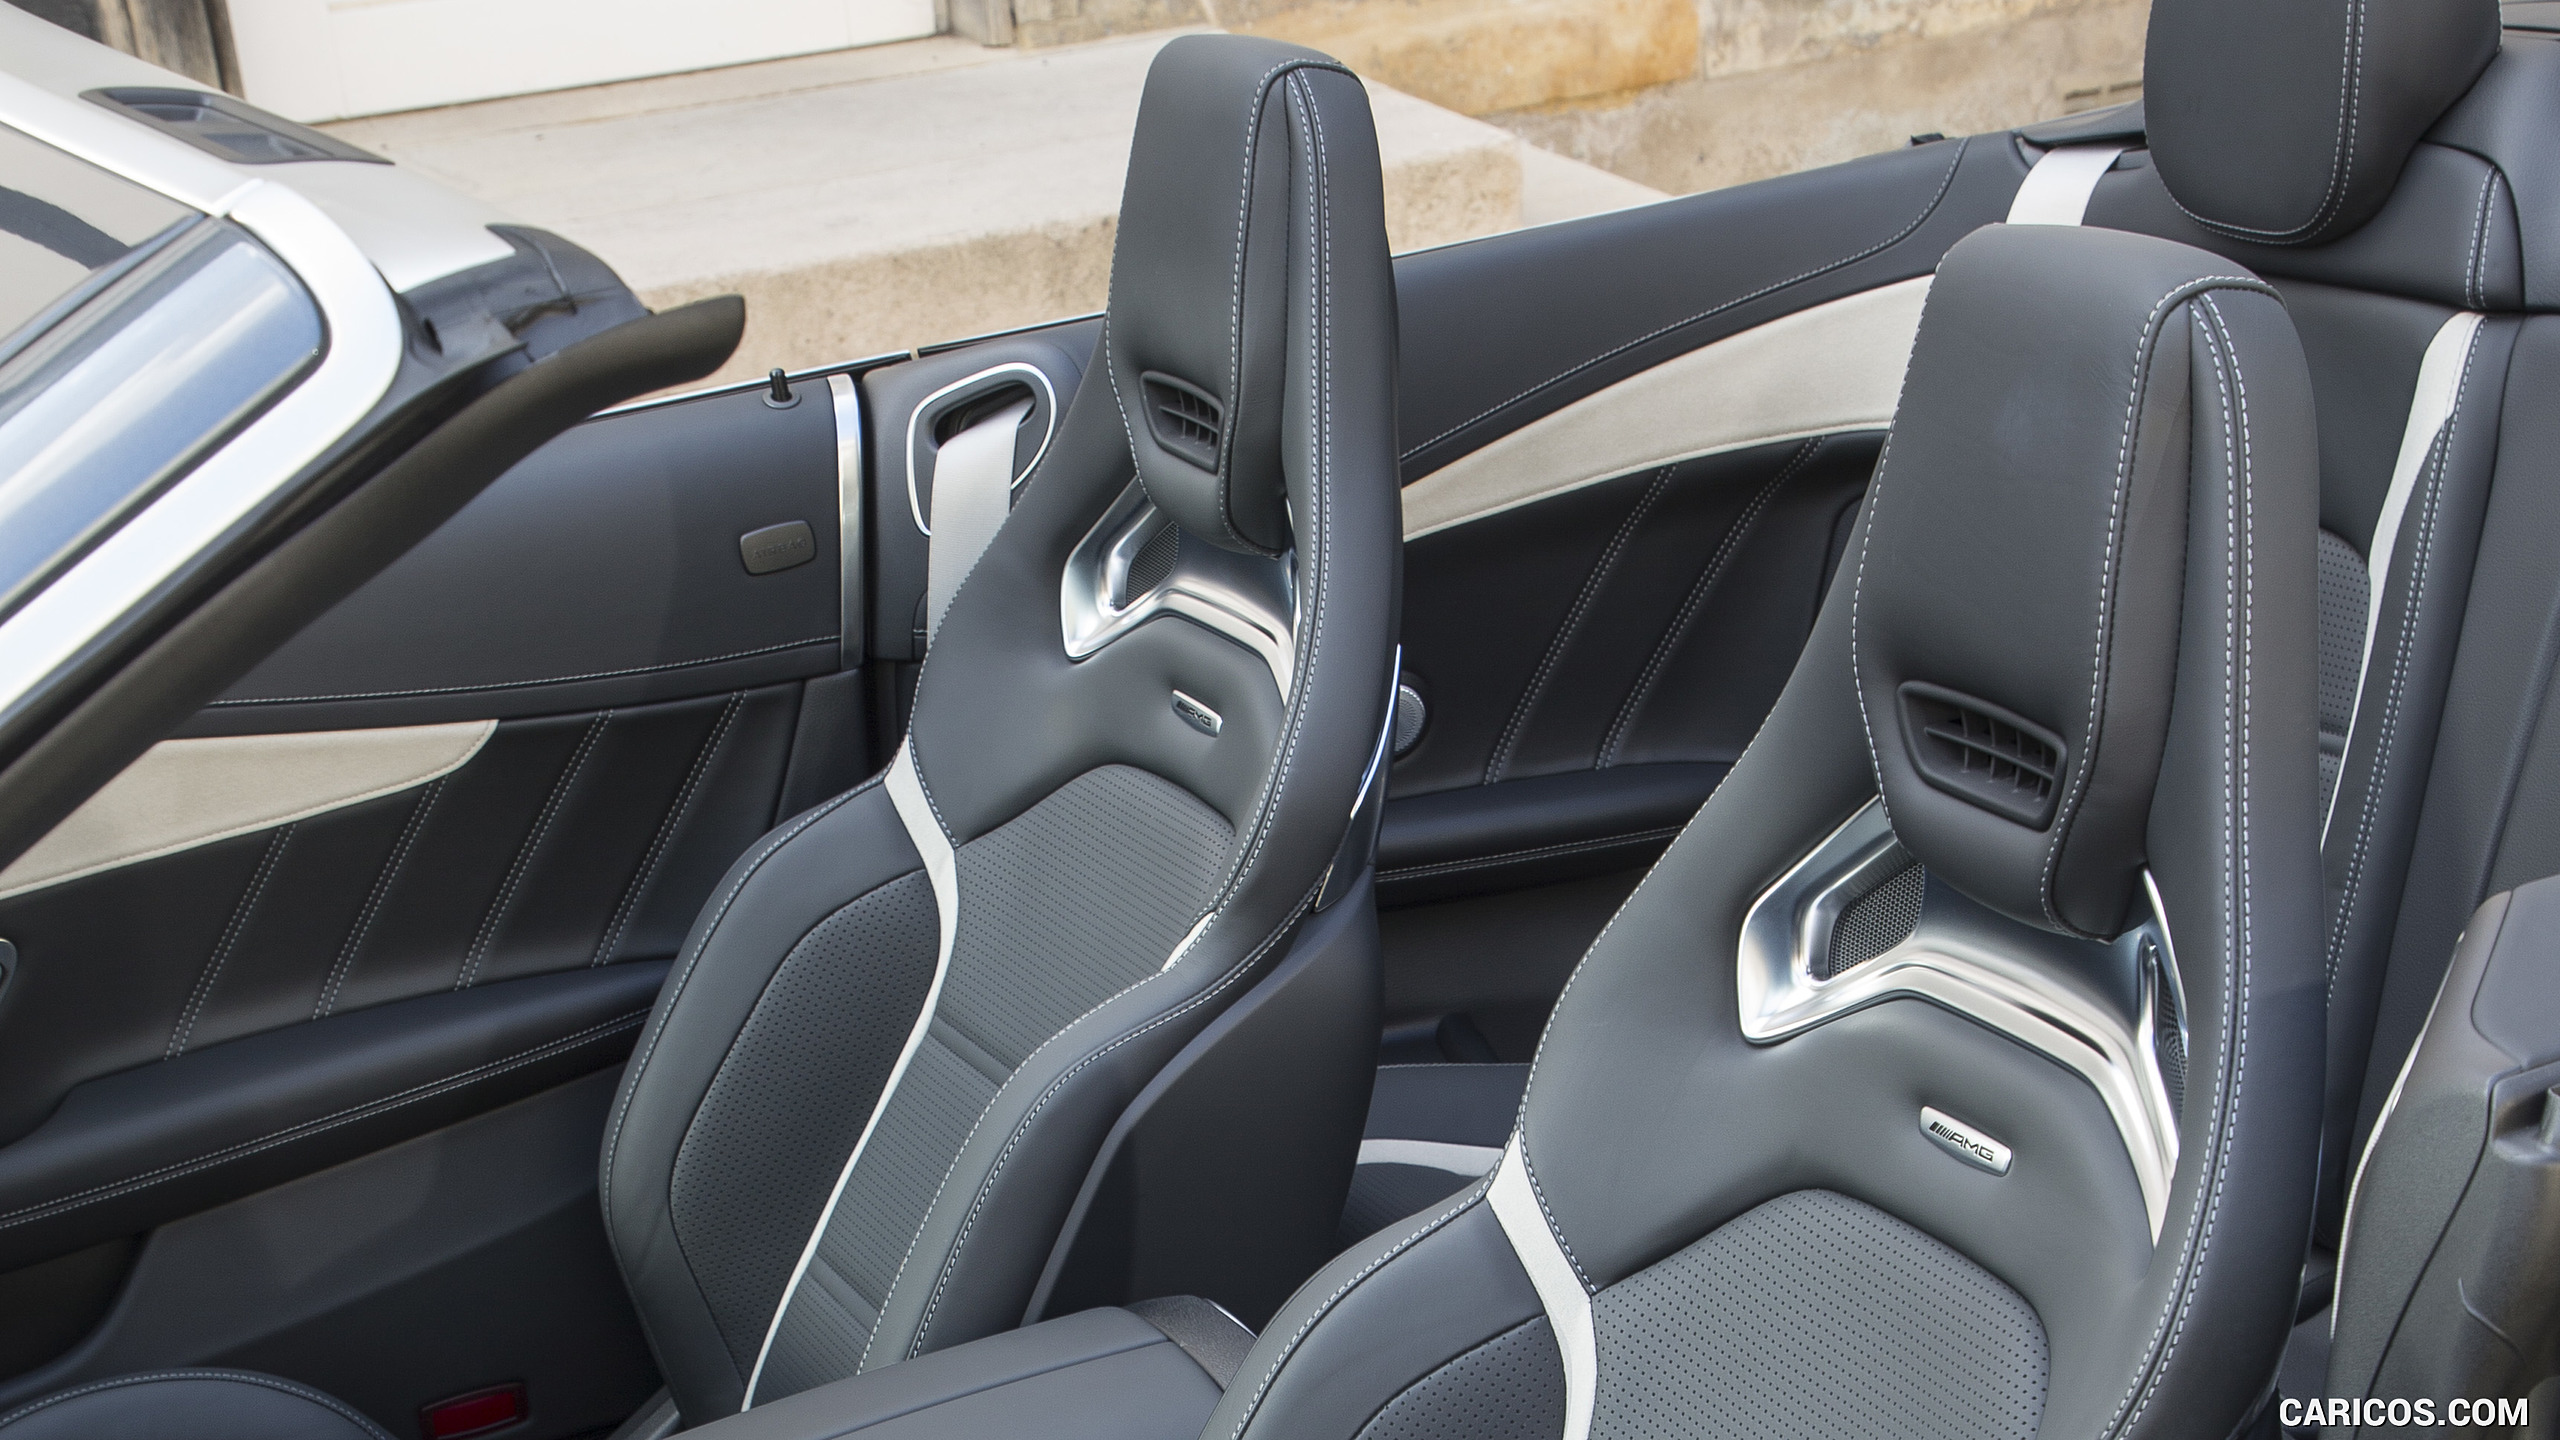 2019 Mercedes-AMG C 63 S Cabrio - Interior, Seats, #68 of 74